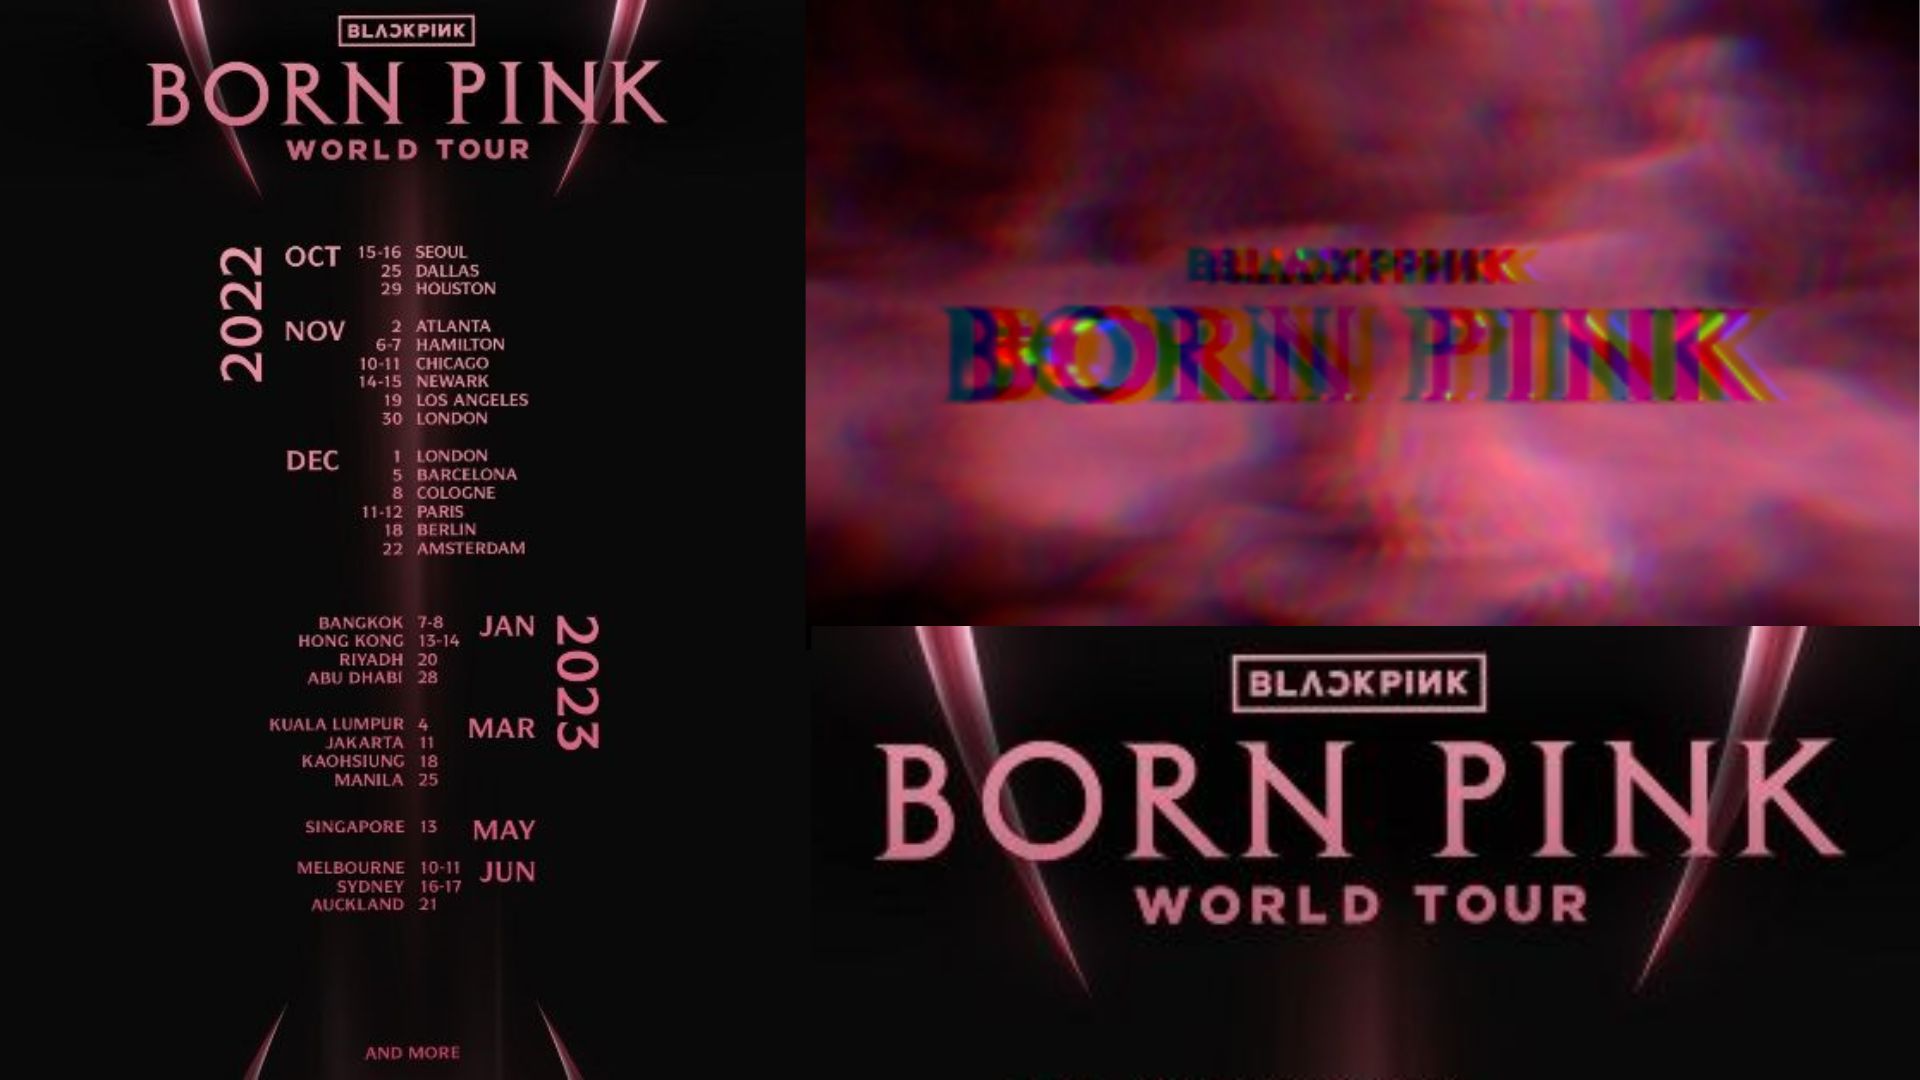 blackpink concert world tour schedule